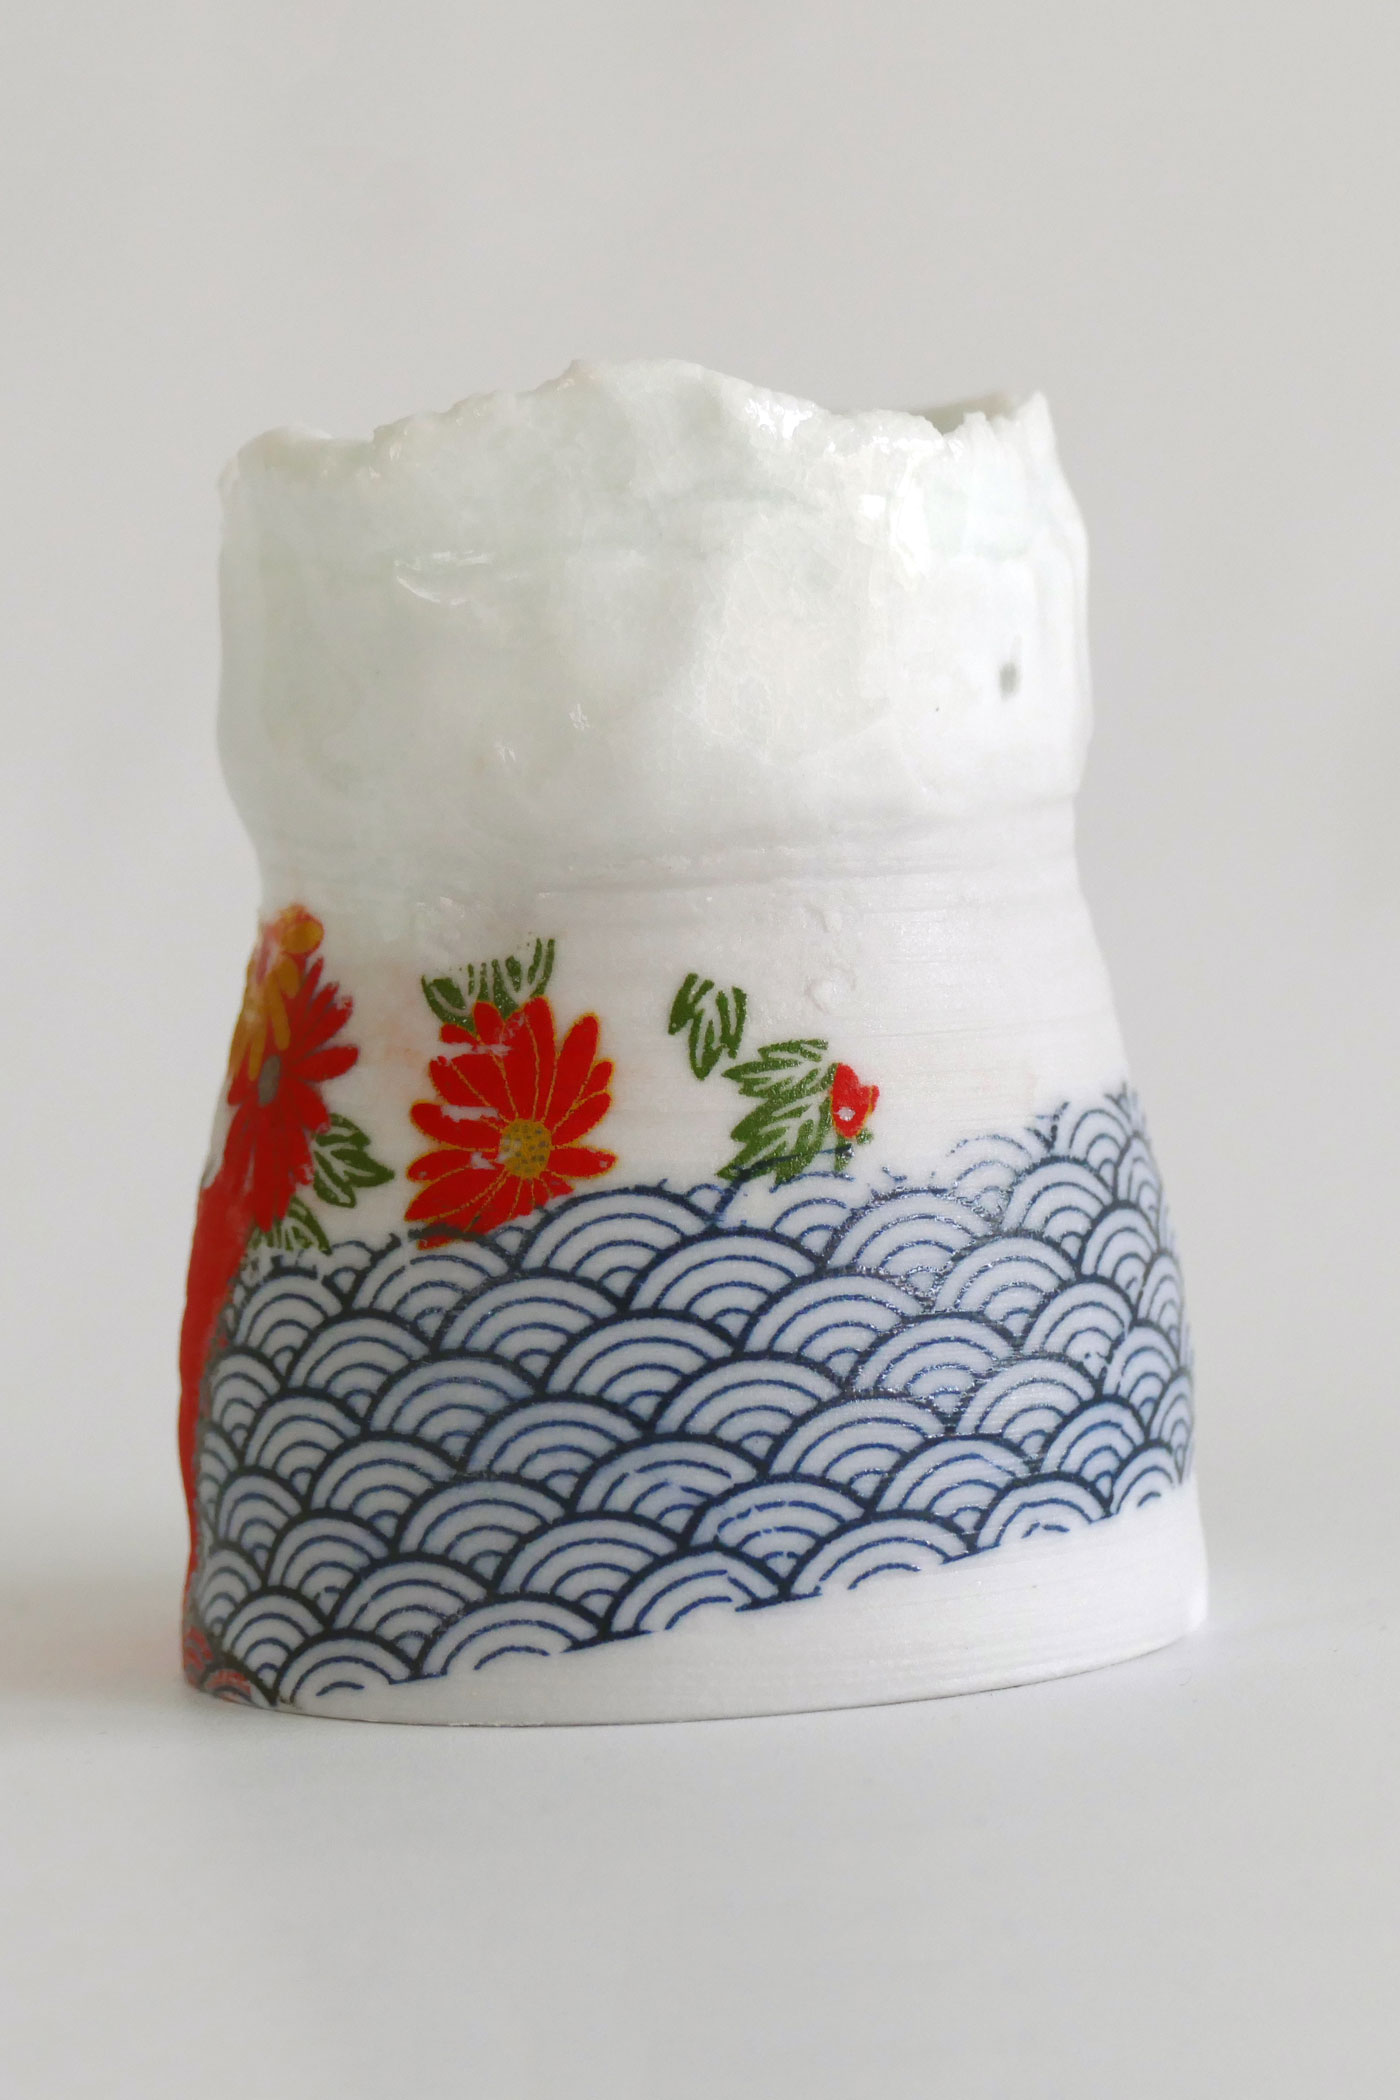 Couronne. Porcelaine du Japon. Tournage, modelage
Ø 6 x h. 14 cm. 2018
